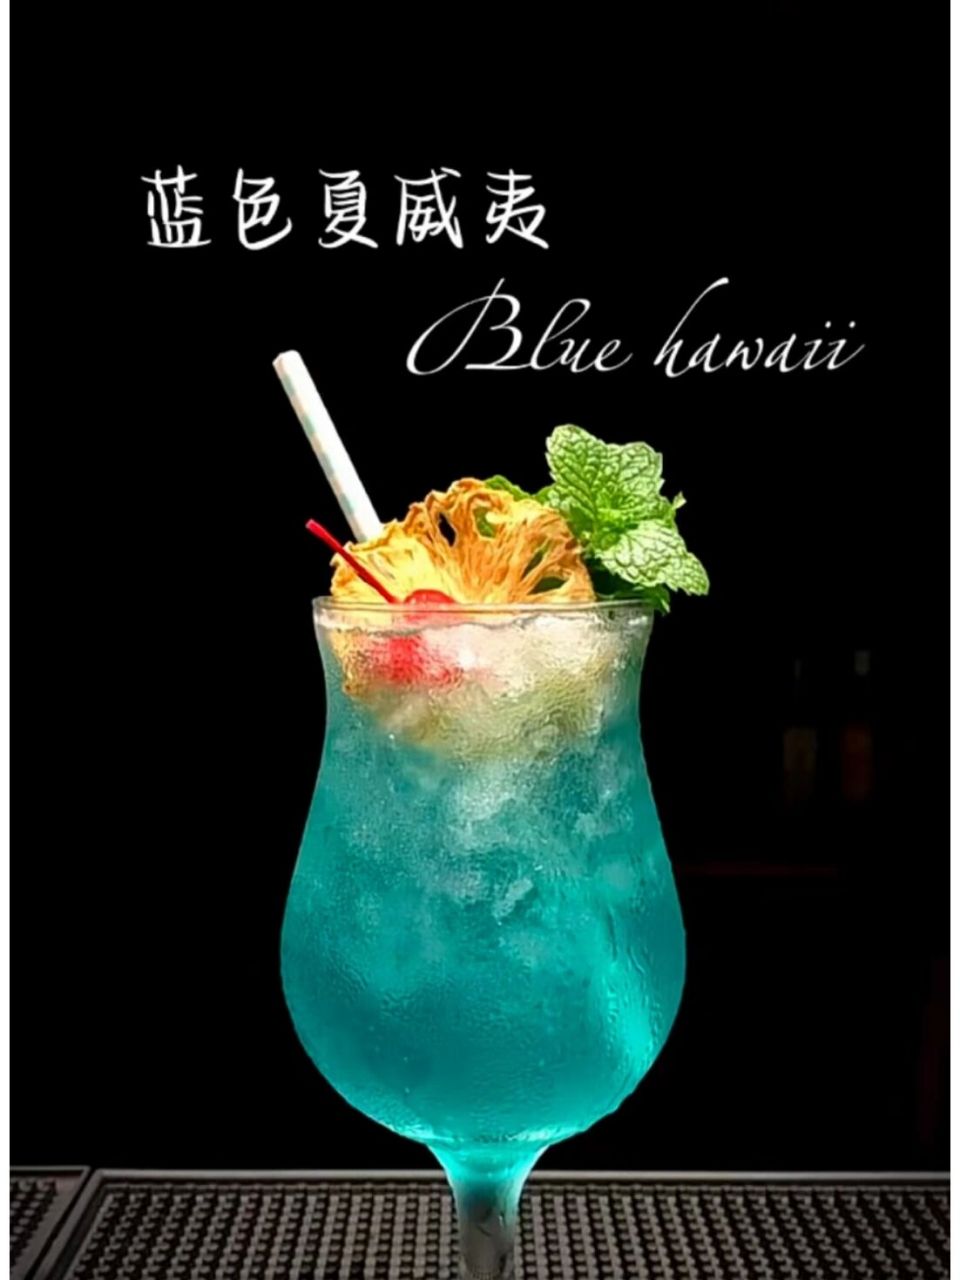 鸡尾酒:蓝色夏威夷(blue hawaii) 就这个颜色真的爱了!